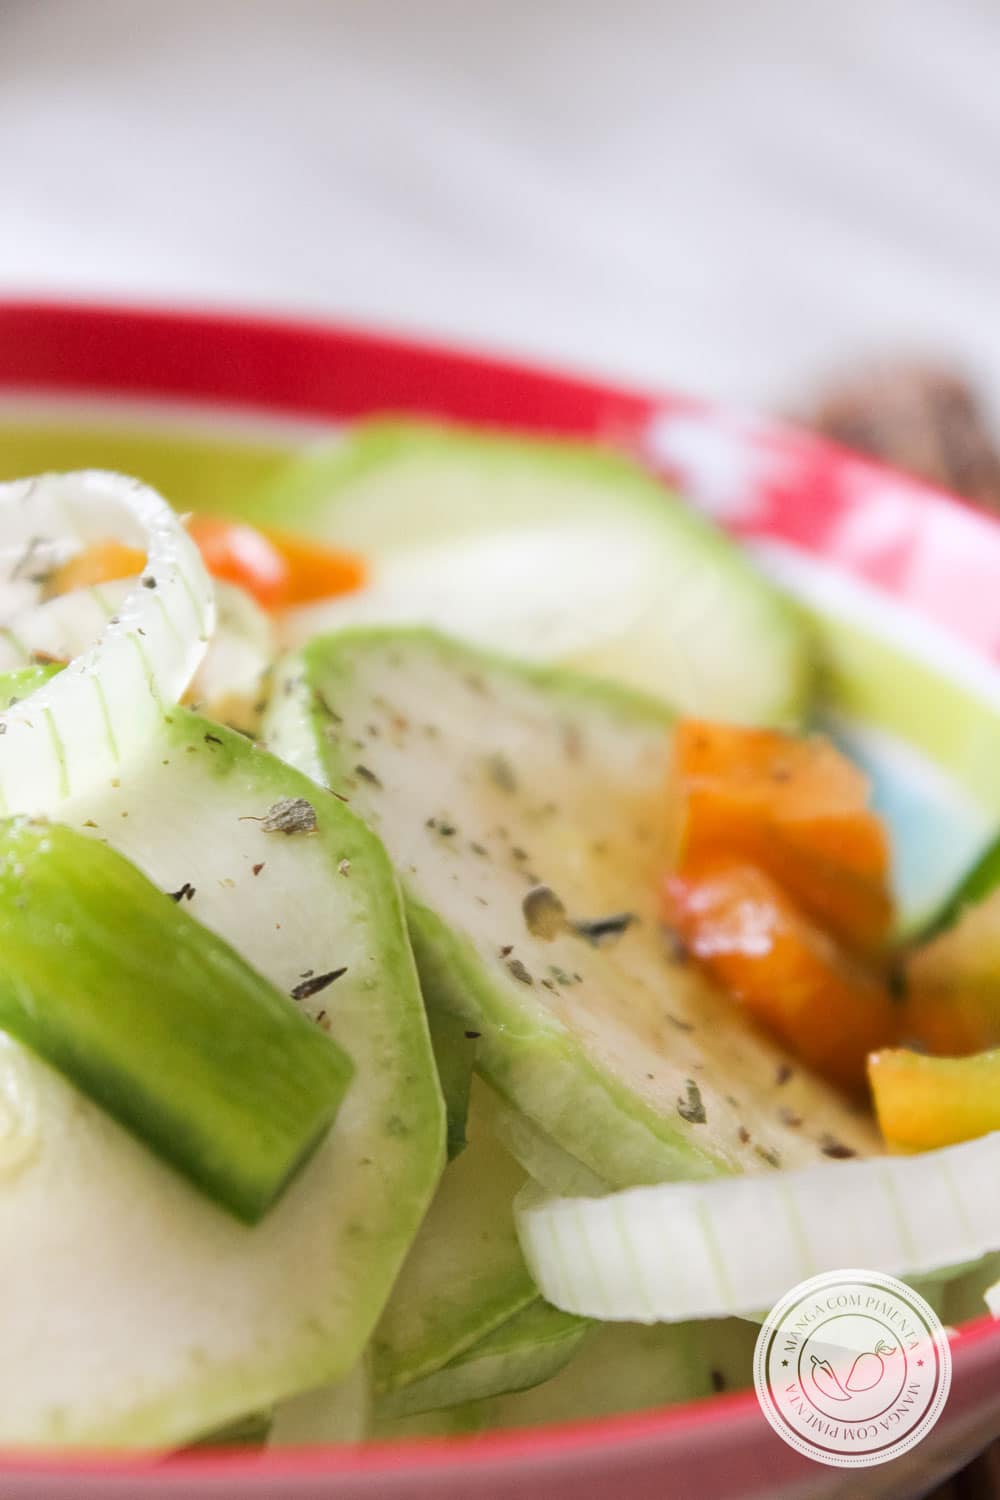 Receita de Salada de Abobrinha Italiana Crua - prepare para o almoço da semana!